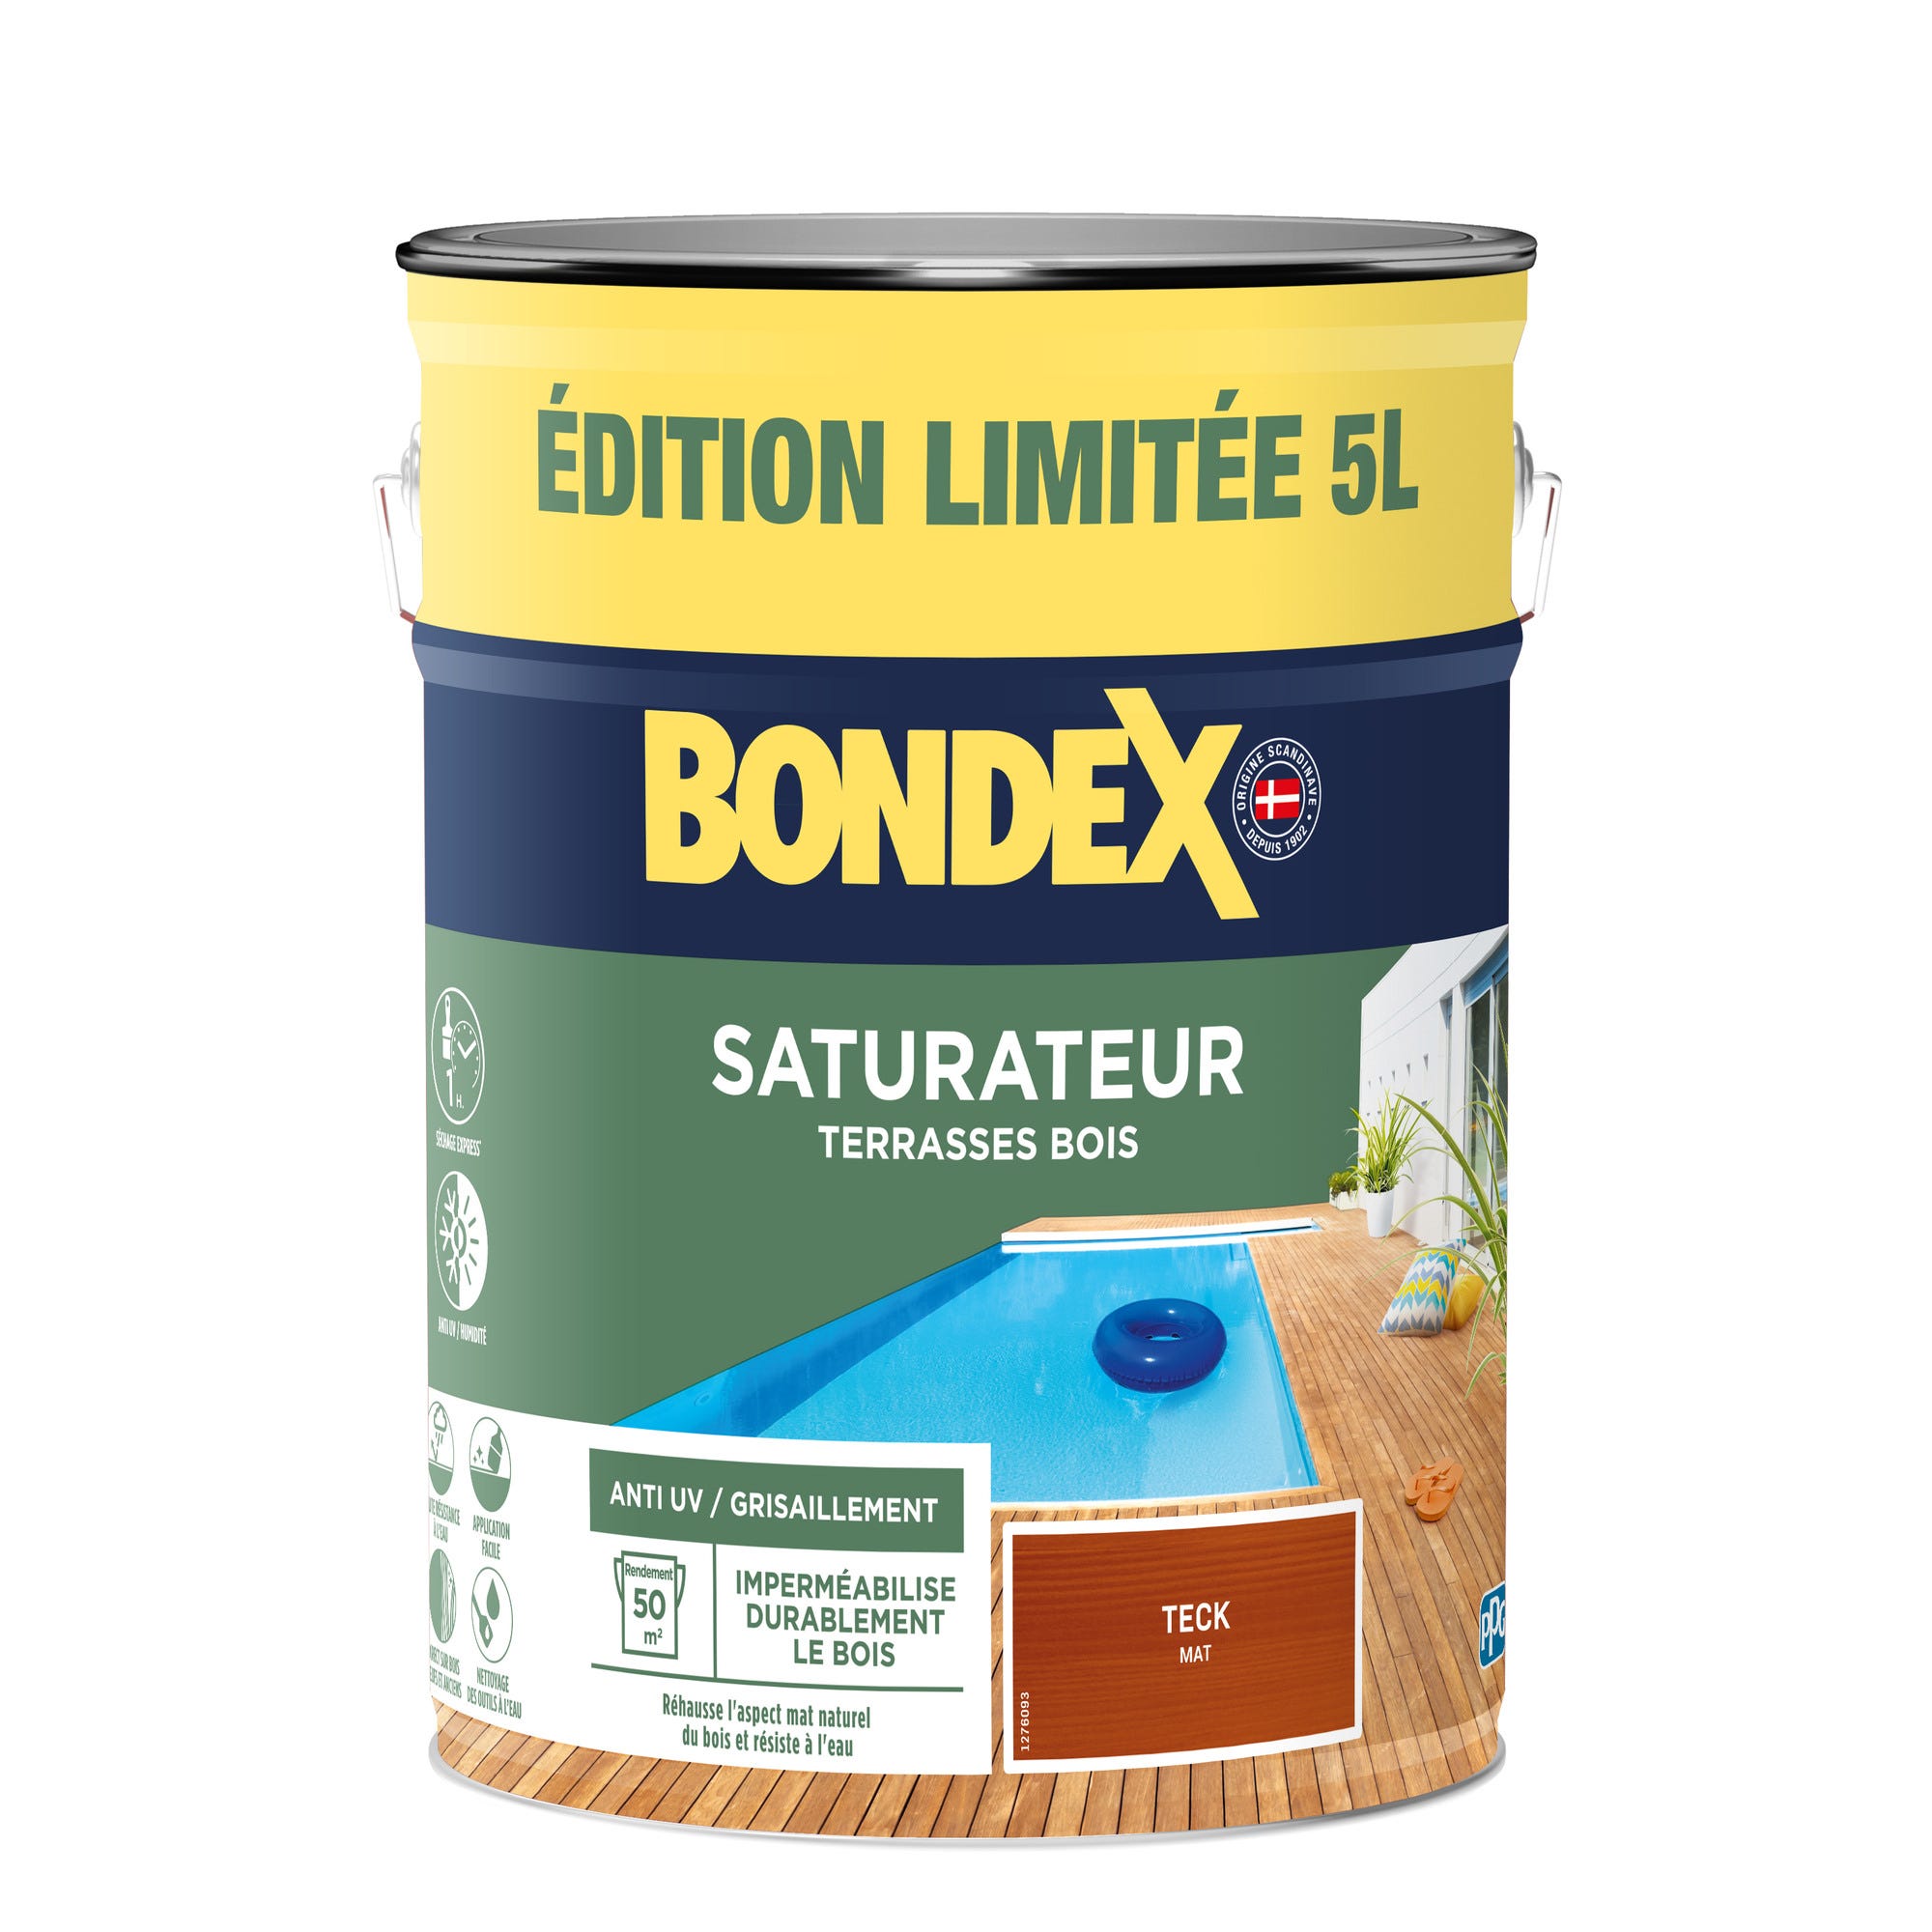 Saturateur terrasse bois teck 5 L Edition limitée - BONDEX 2